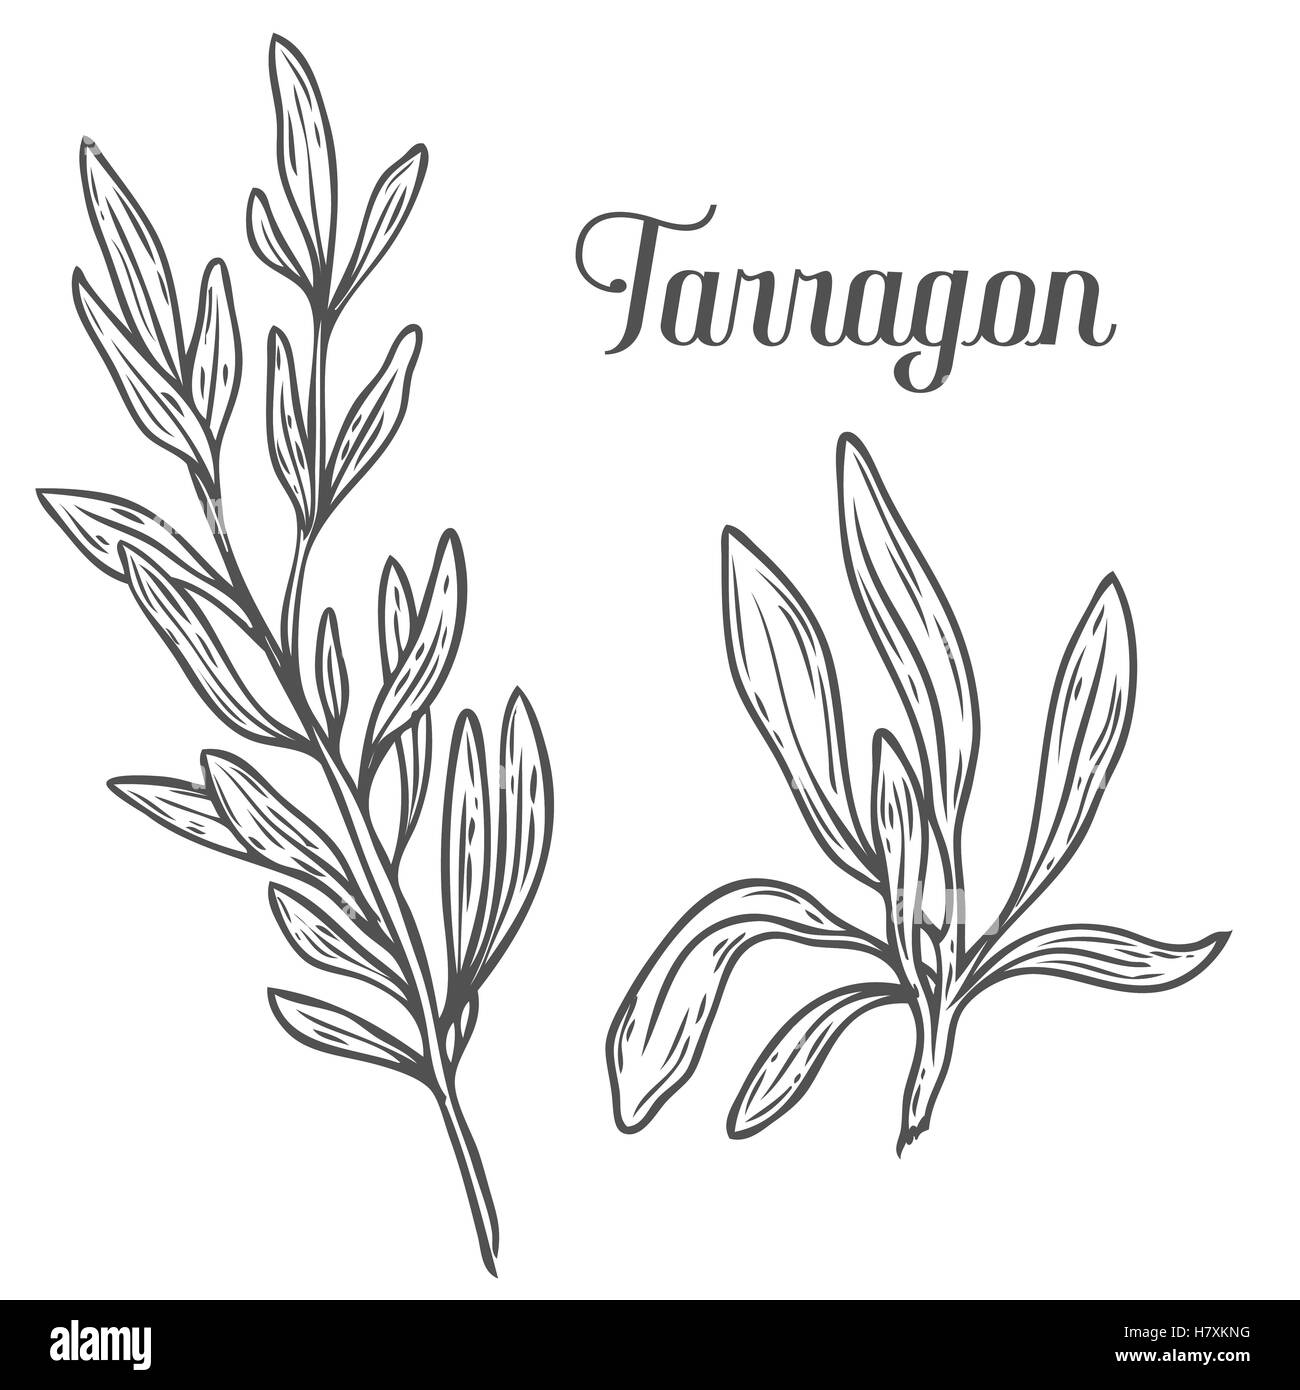 Französischer Estragon Artemisia Dracunculus Sativa handgezeichnete Skizze Vektorgrafik. Küchenkraut für Kochen, Medizin, gardeni Stock Vektor